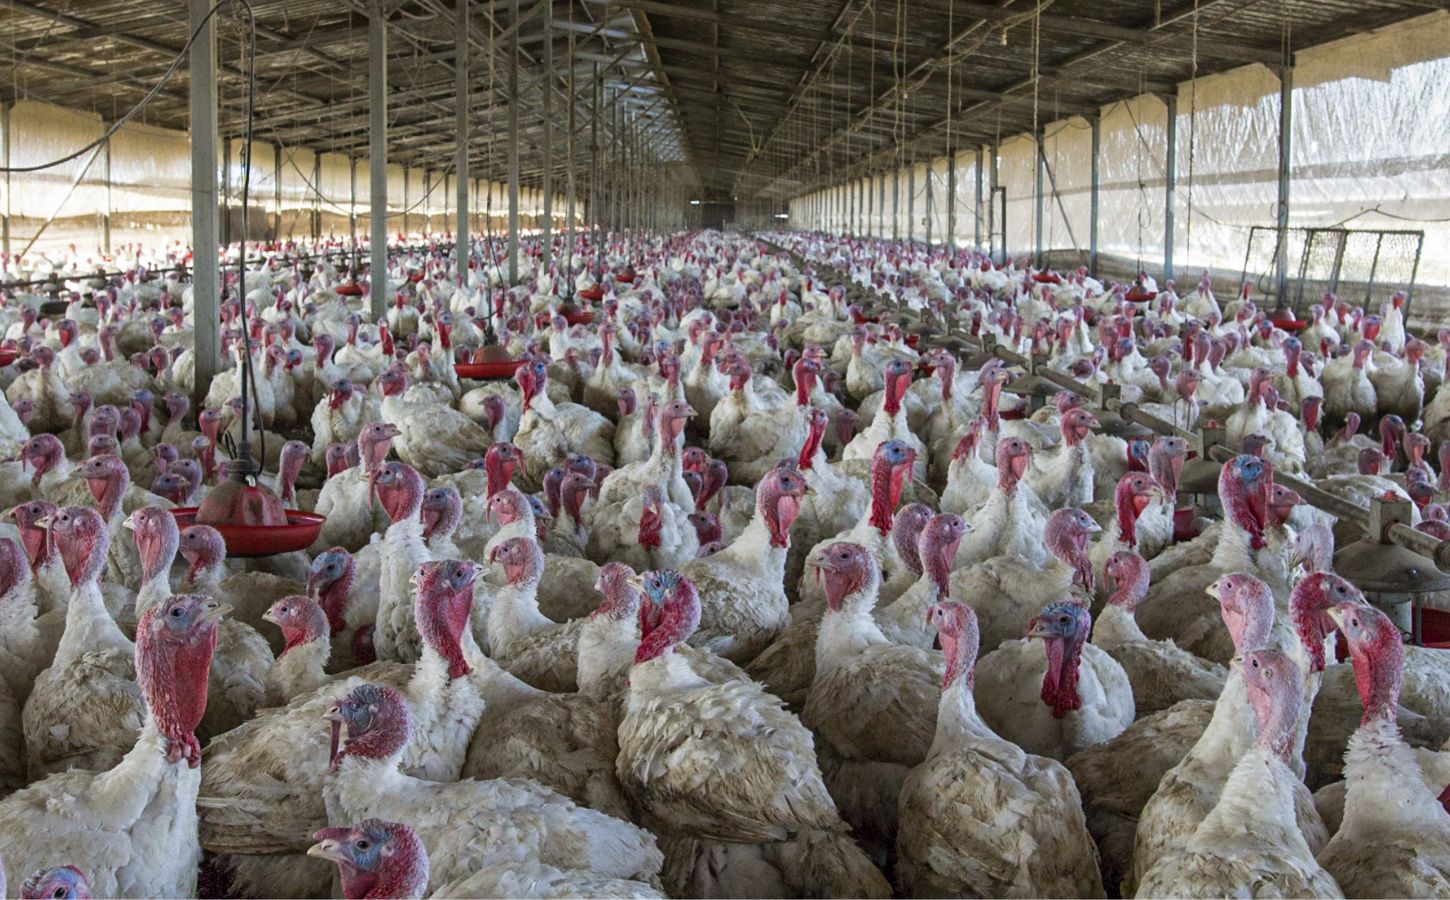 Turkeys crowded in a factory farm